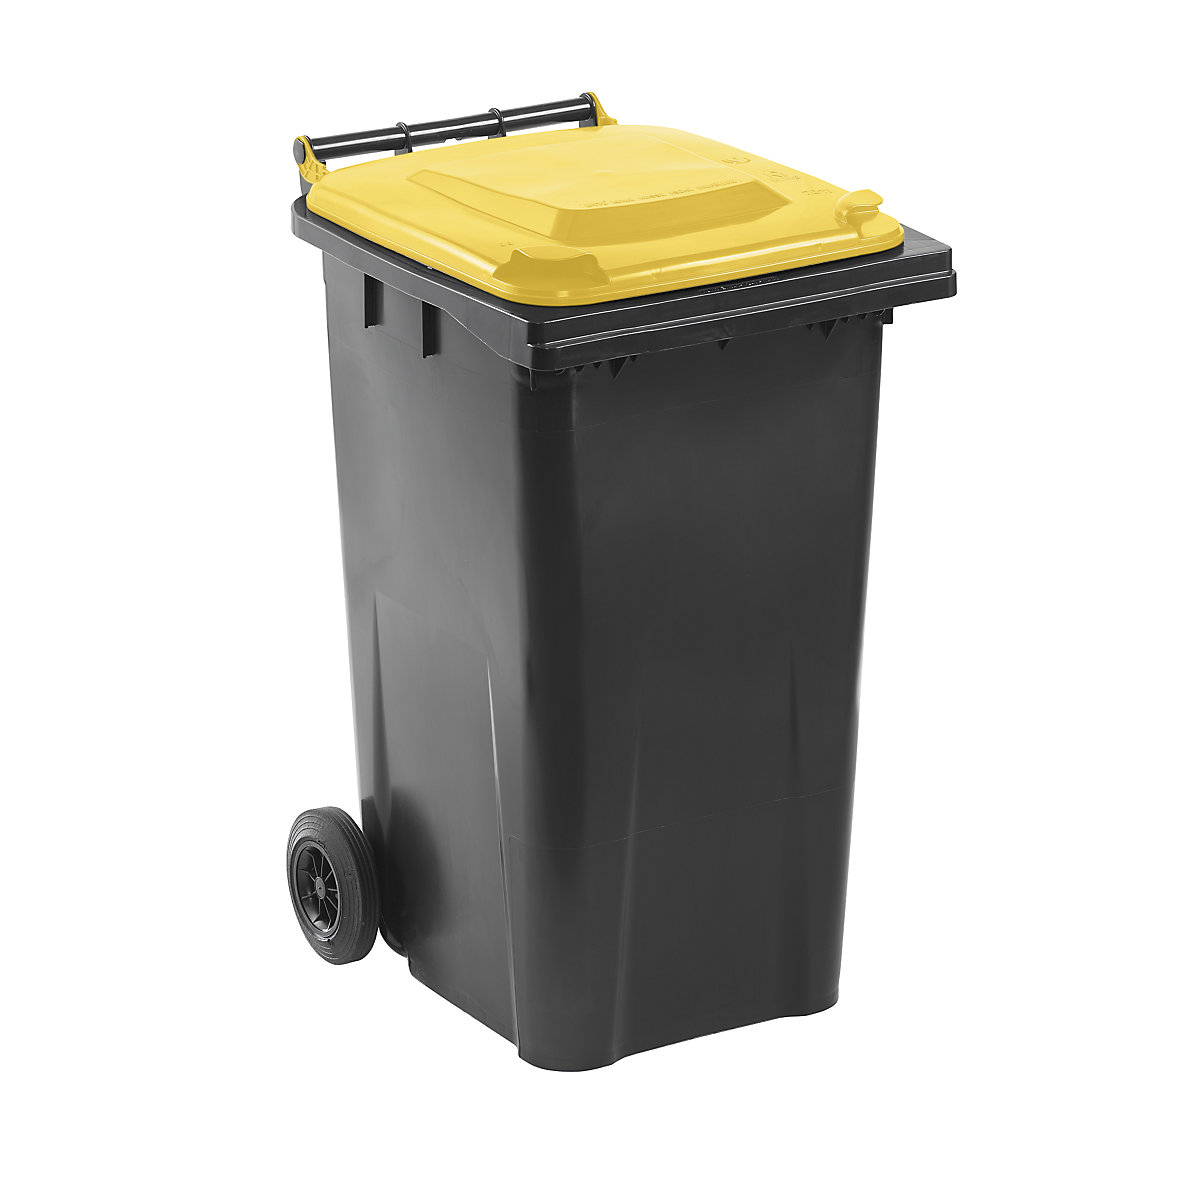 Nádoba na odpad podle ČSN EN 840, objem 240 l, š x v x h 580 x 1100 x 740 mm, antracitová, víko žluté